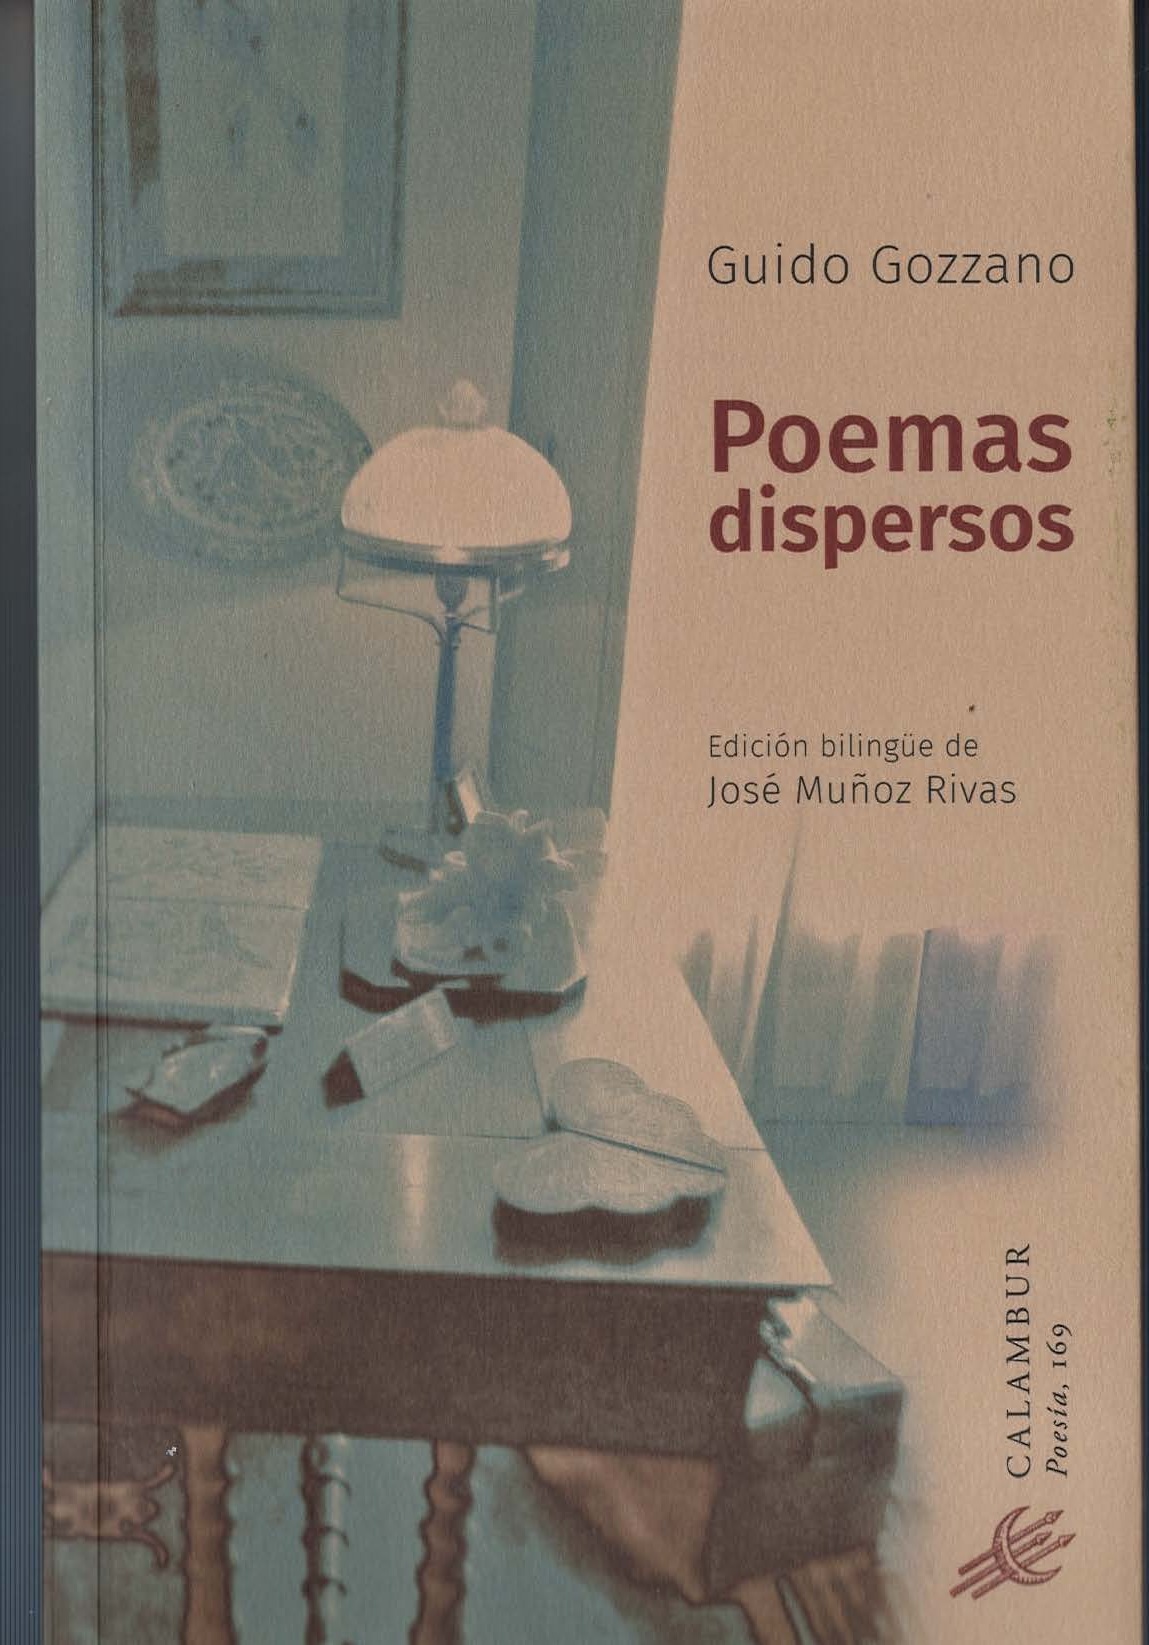 Imagen de portada del libro Poemas dispersos